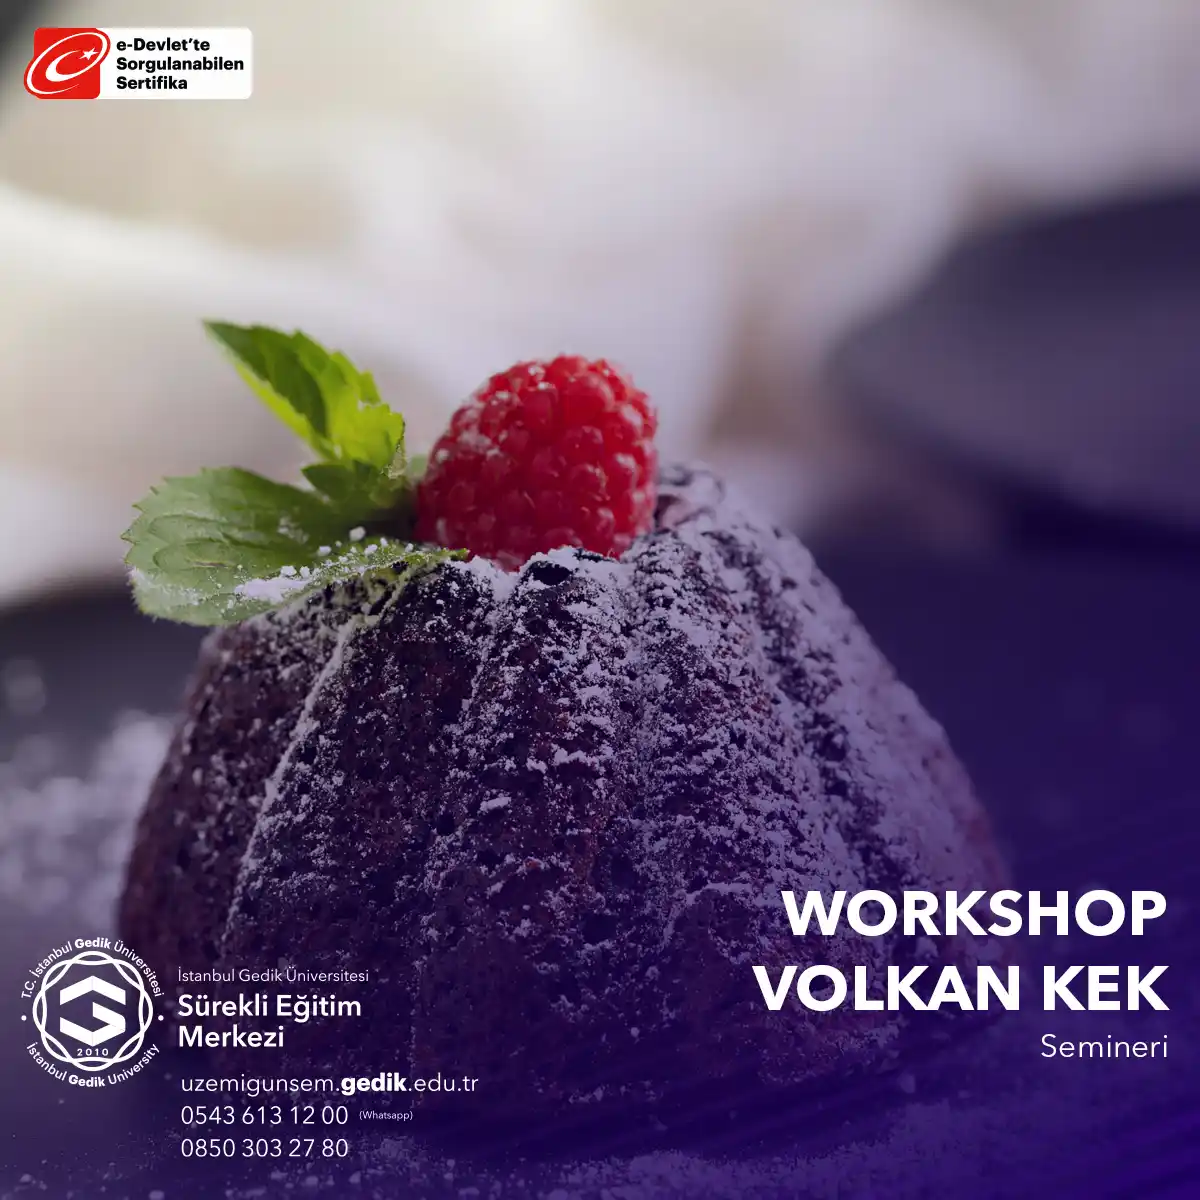 Bu seminer, katılımcılara kek hamuru hazırlama, dolgu yapma, volkan kekin nasıl pişirileceği ve servis edileceği gibi adımları öğretir.